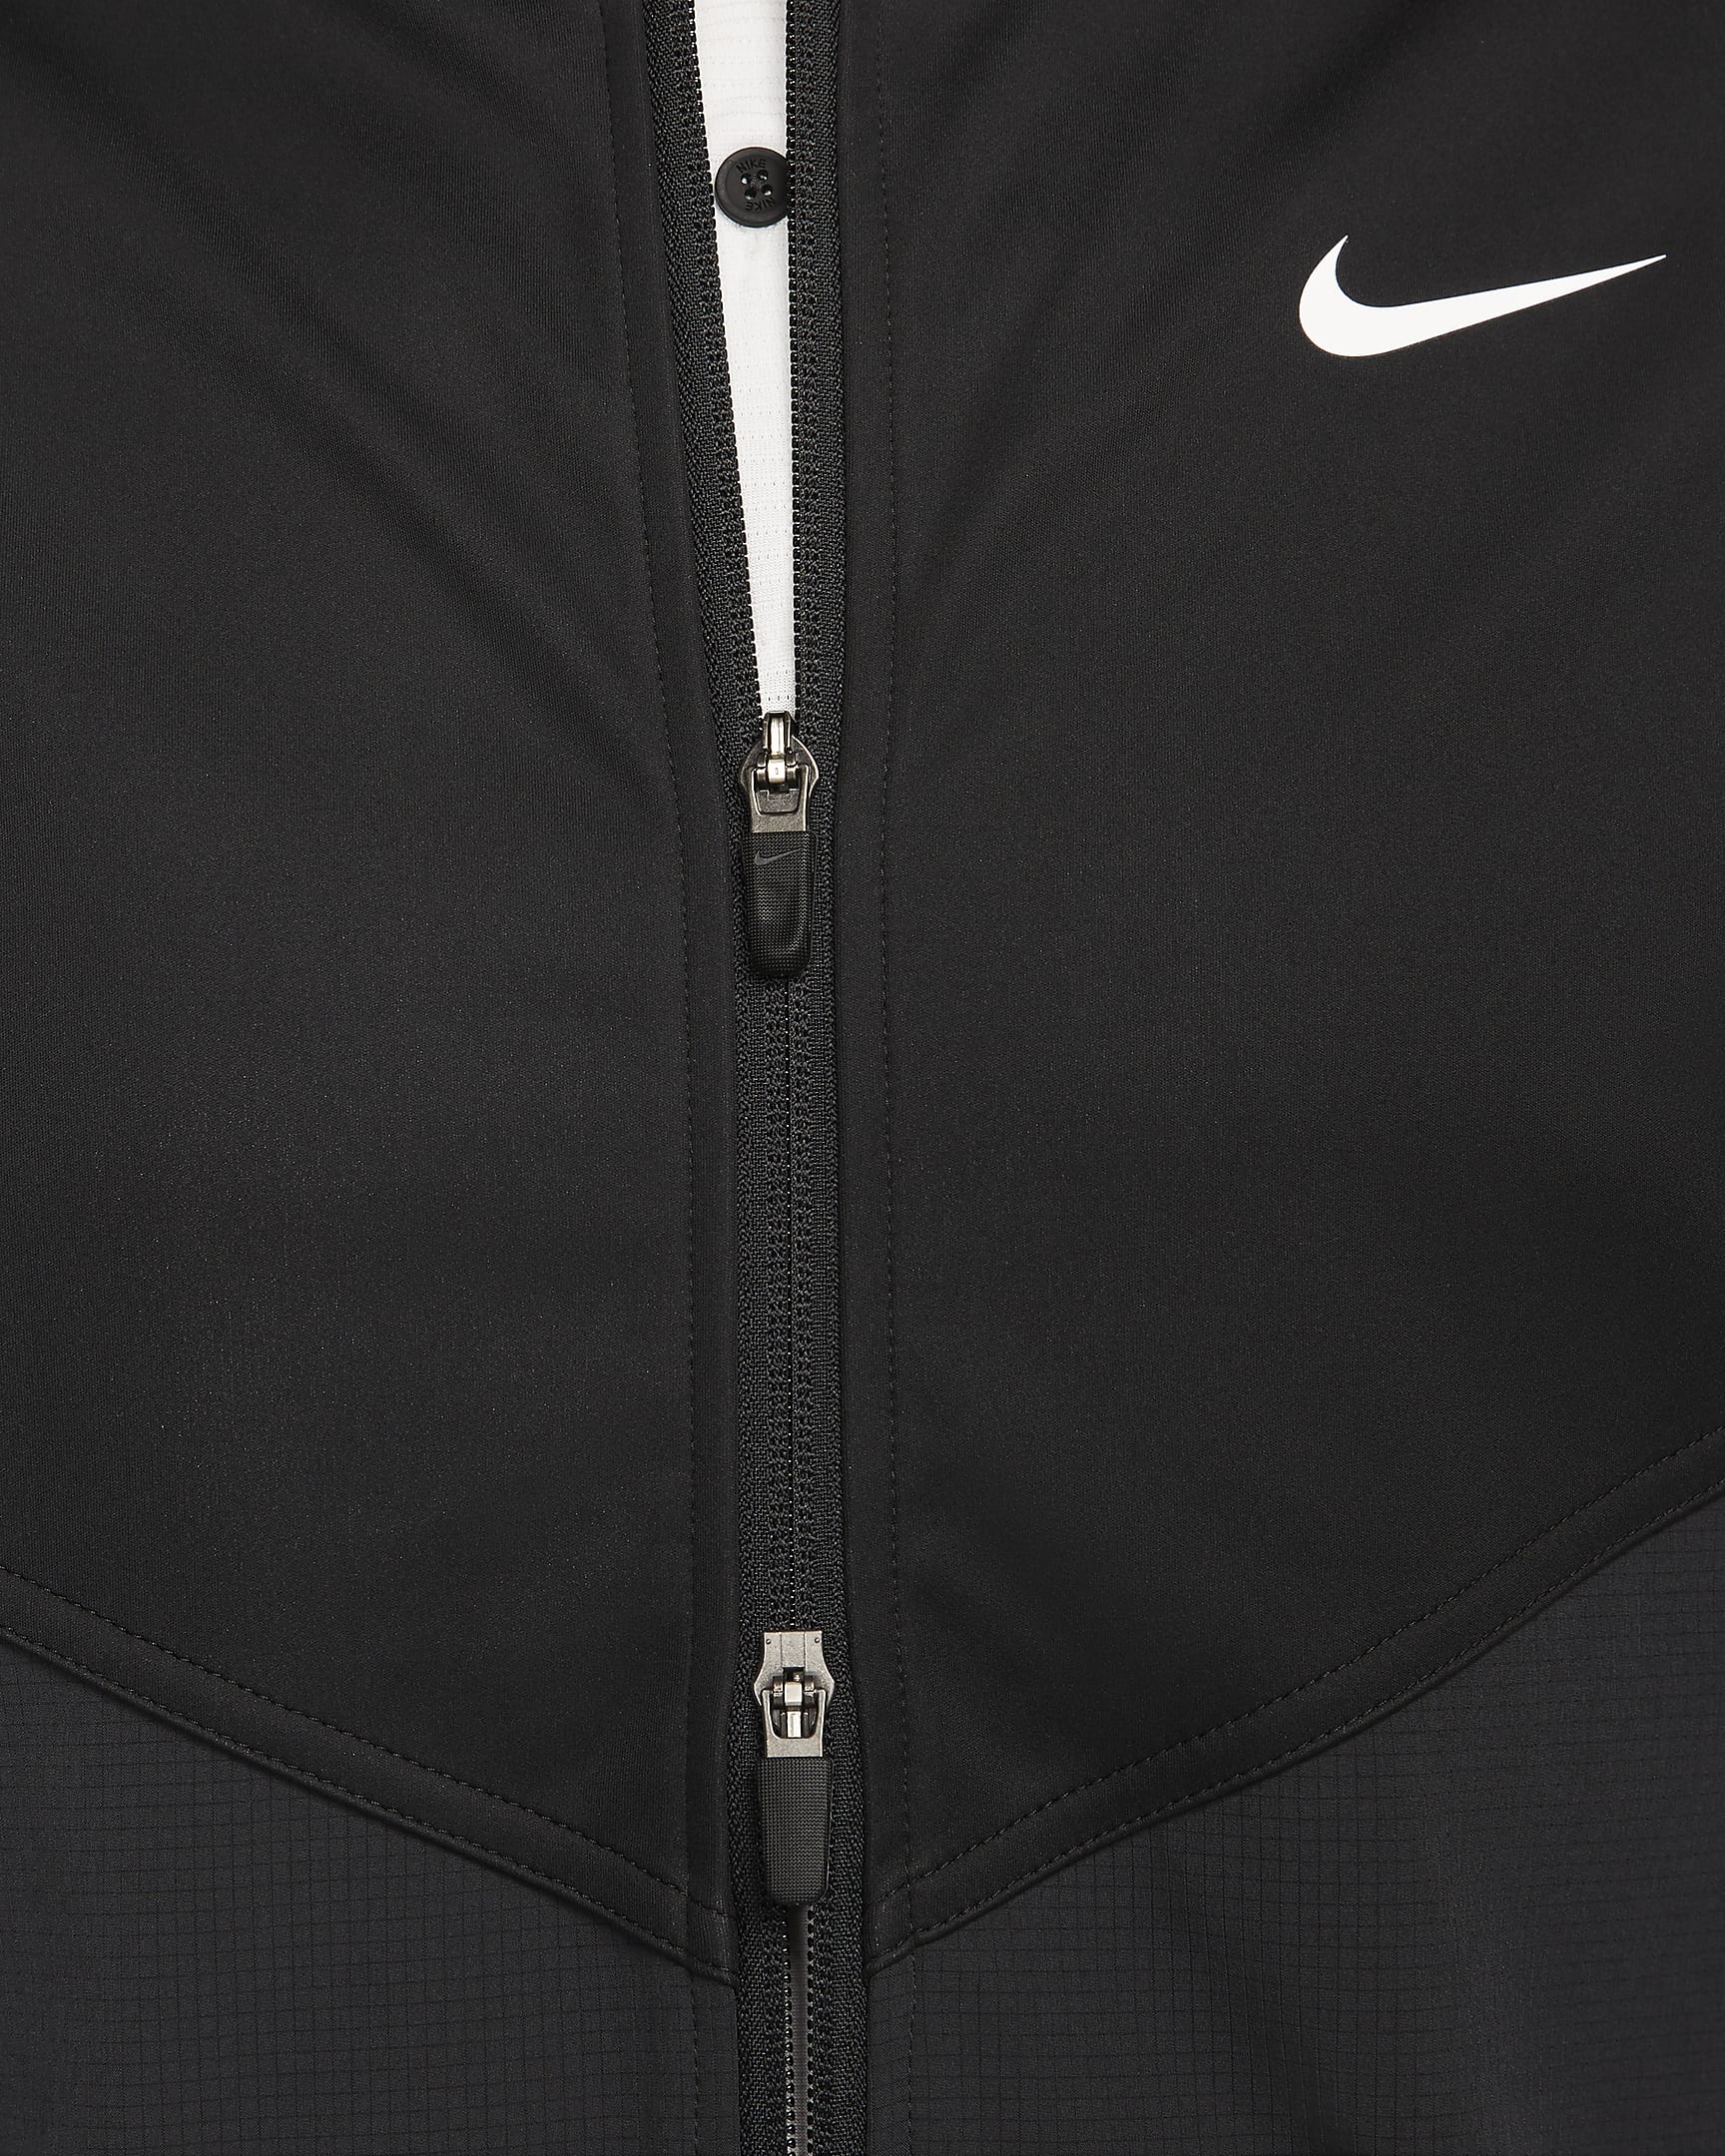 Nike Tour Essential Men's Golf Jacket - Black/Black/White